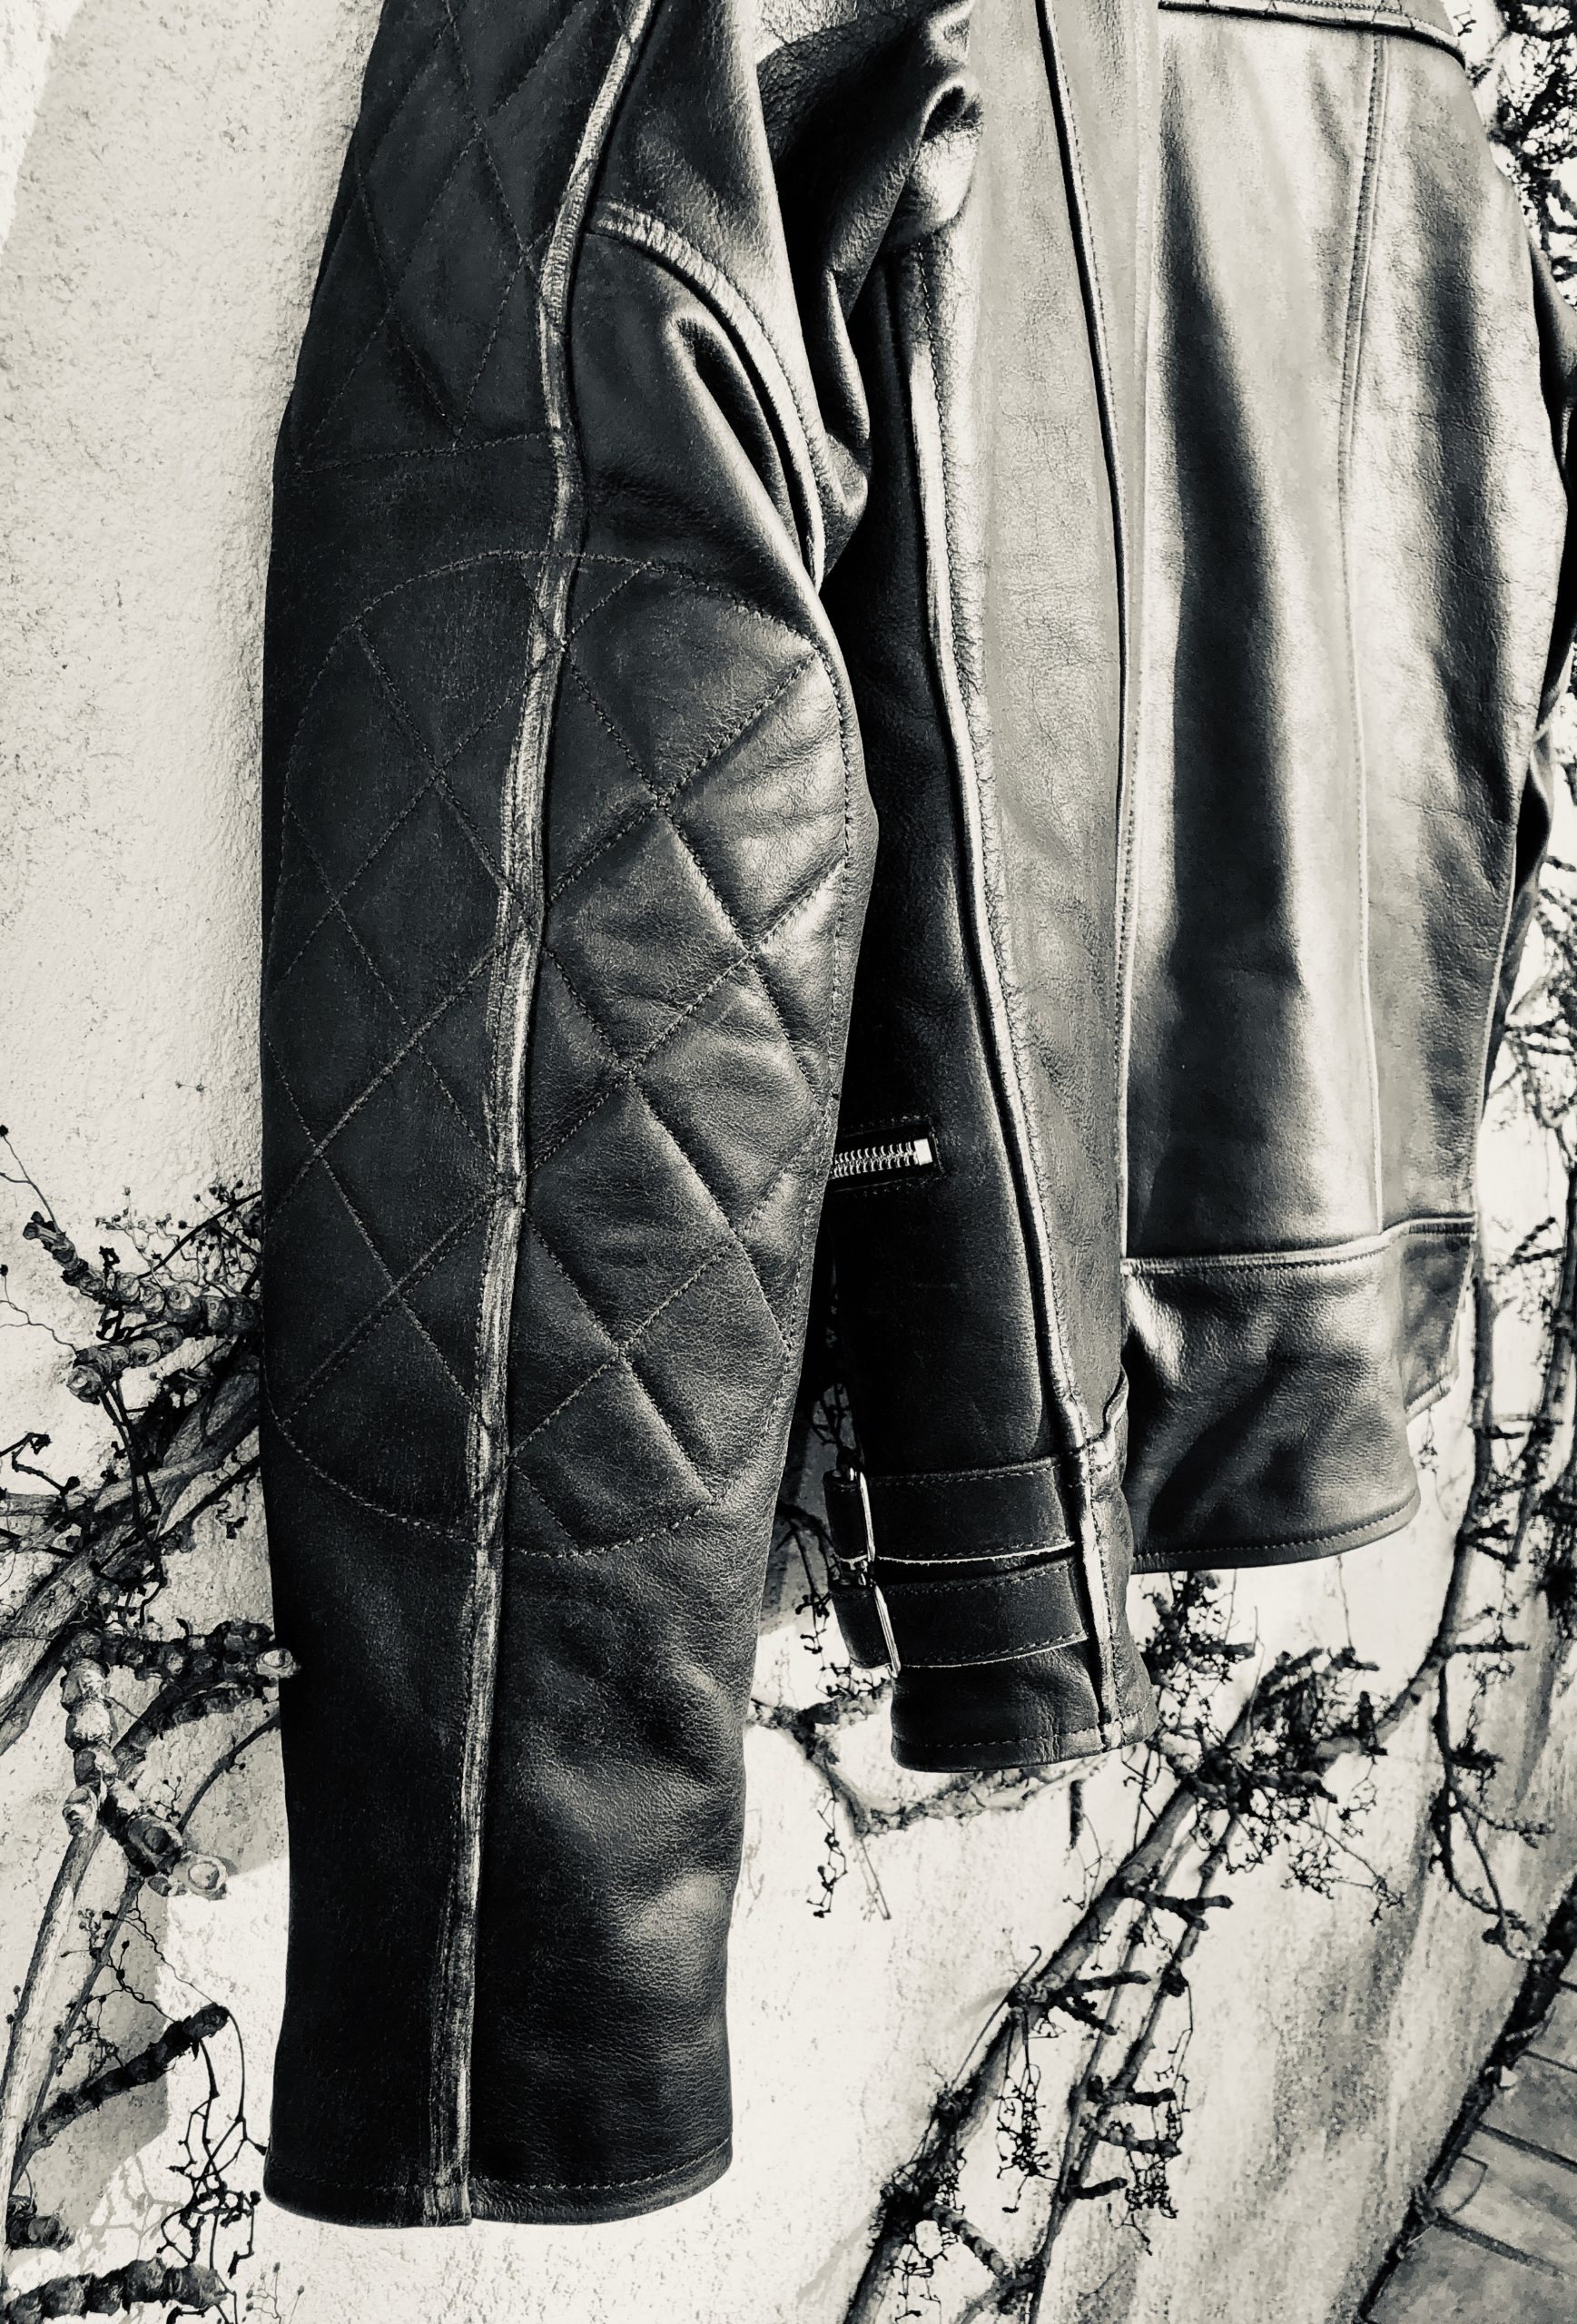 KPPONG Veste en Cuir Homme Suède Hiver Vintage Doublée Polaire Chaud Moto Motard Casual Manteau Perfecto Militaire Jacket Outwear